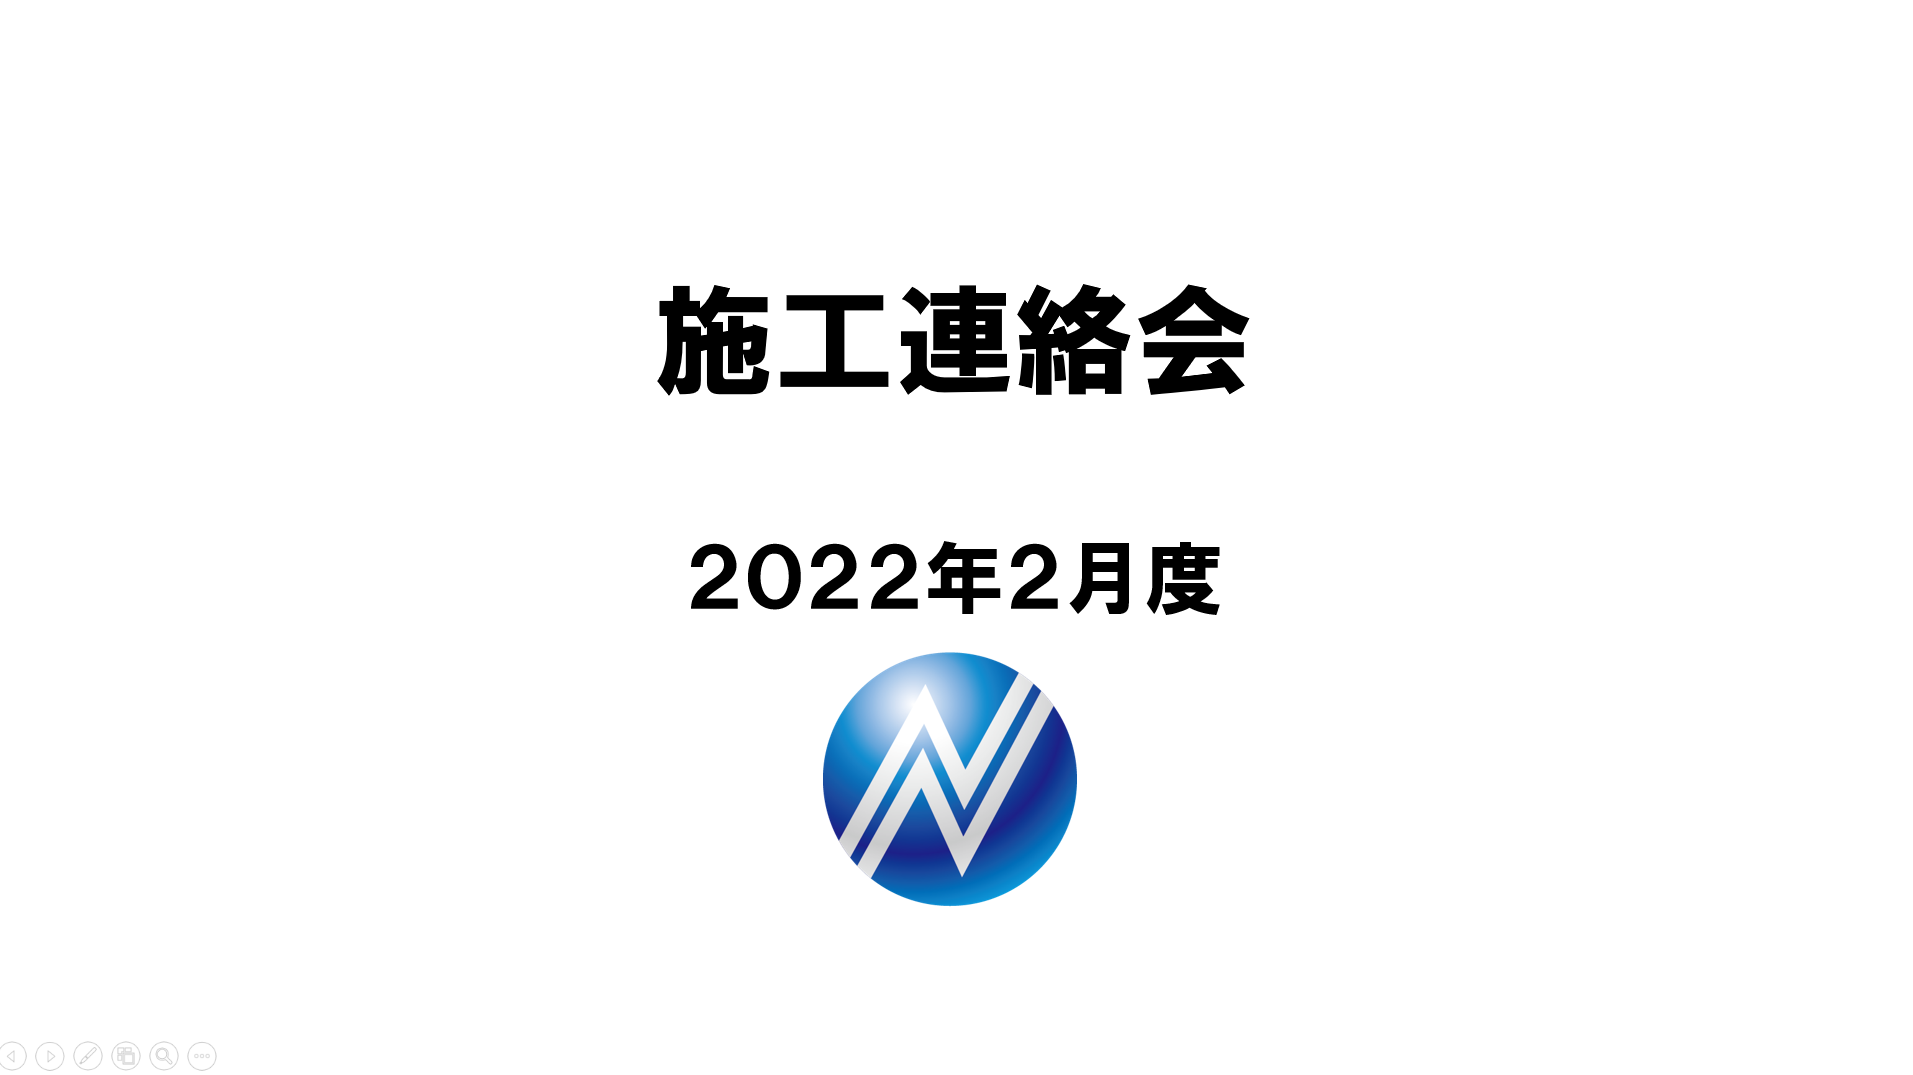 2022年2月度施工連絡会を開催致しました。